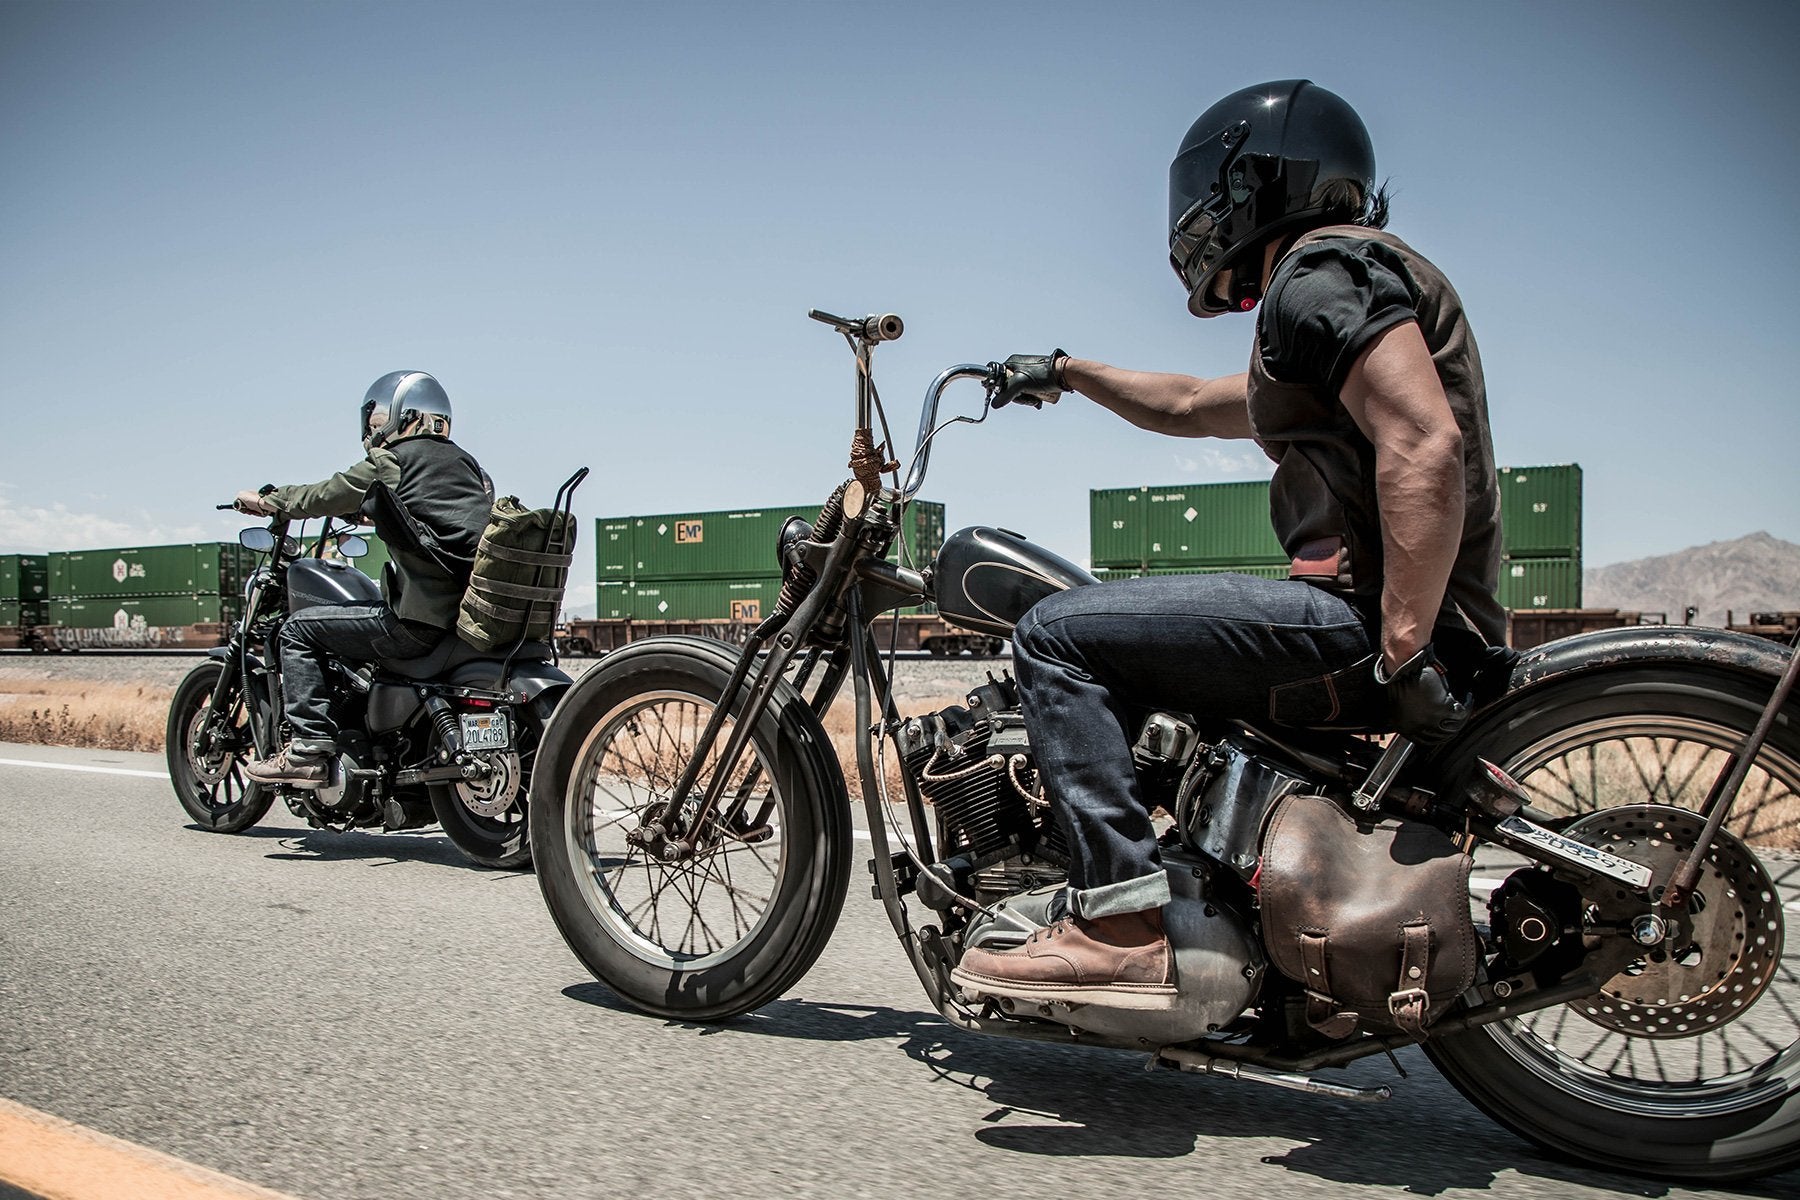 Australian Biker Gear Motorcycle Motorbike Cargo Trouser Jeans Lined with  Kevlar